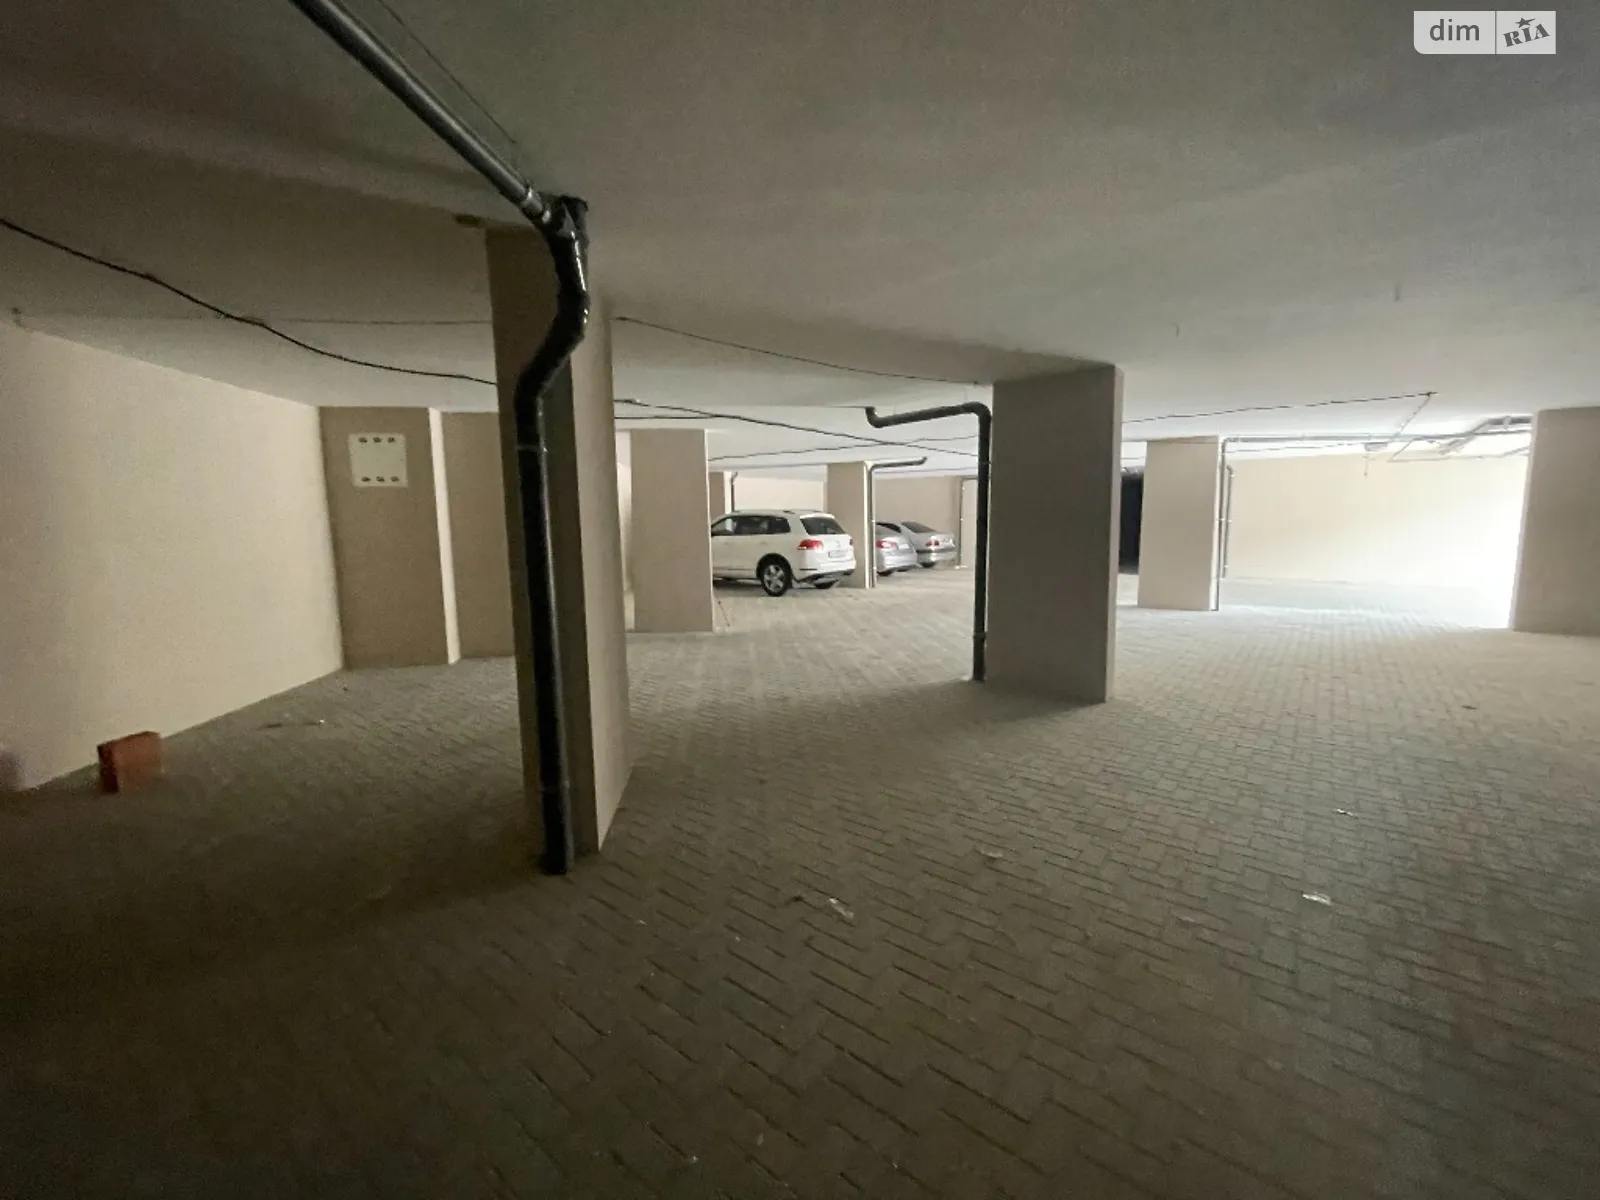 Продается подземный паркинг под легковое авто на 38.71 кв. м - фото 2